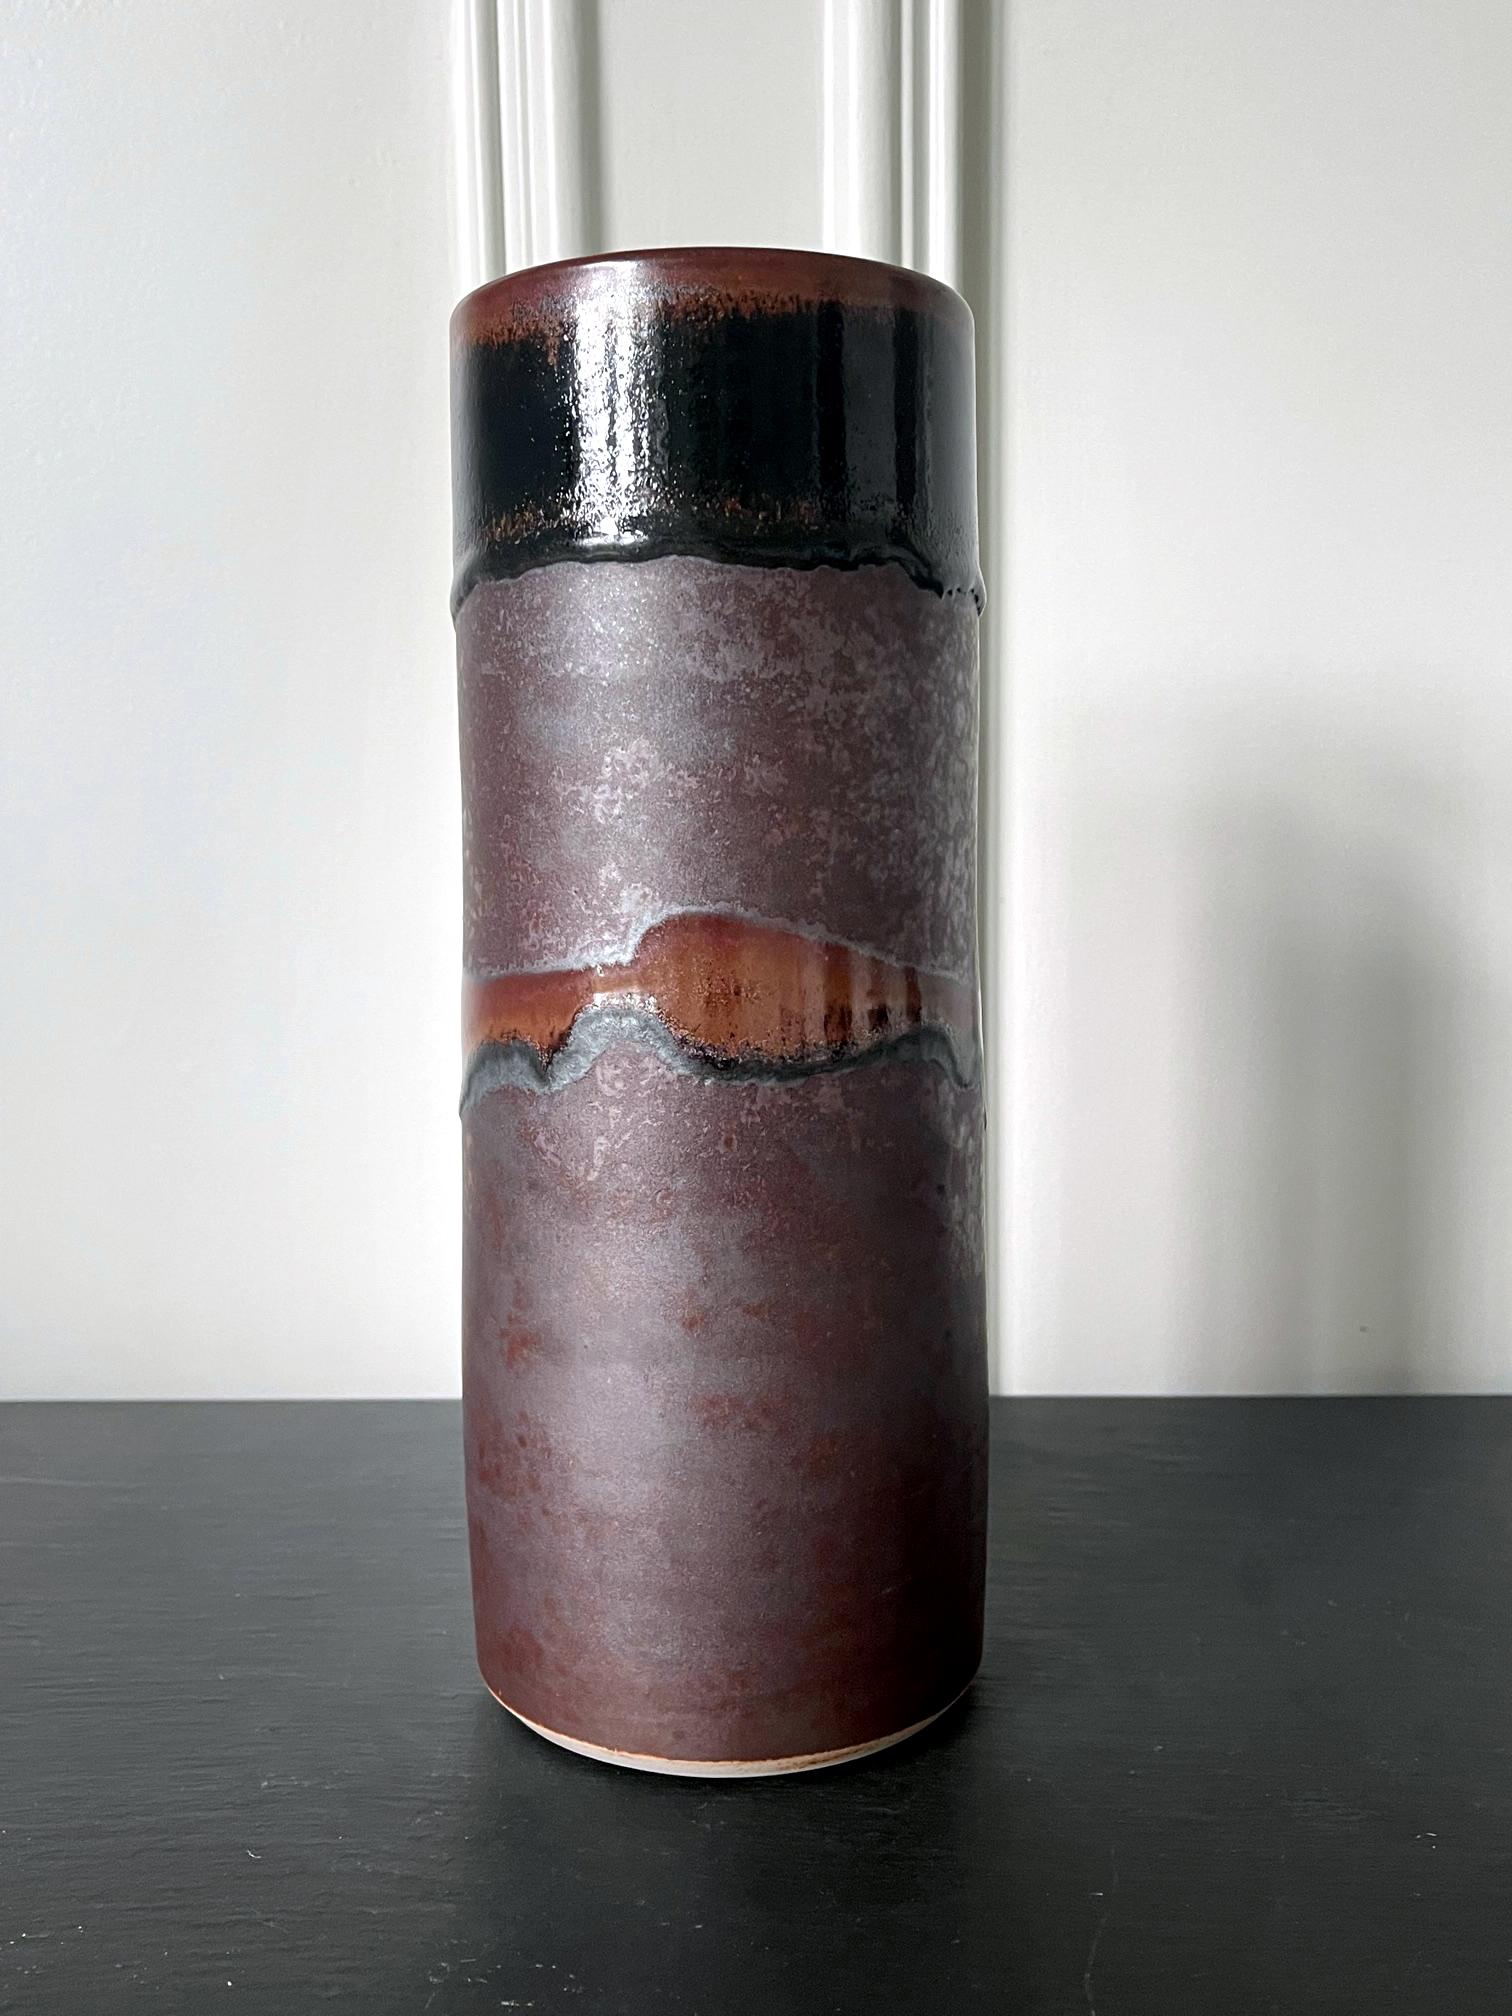 Eine frühe Keramikvase in leicht verjüngter Zylinderform des Töpfers Bruder Thomas Bezanson (1929-2007). Die minimalistische Silouette ist mit ihrem breiteren Mundrand im perfekten Kreis auffallend ursprünglich und erinnert an die chinesische